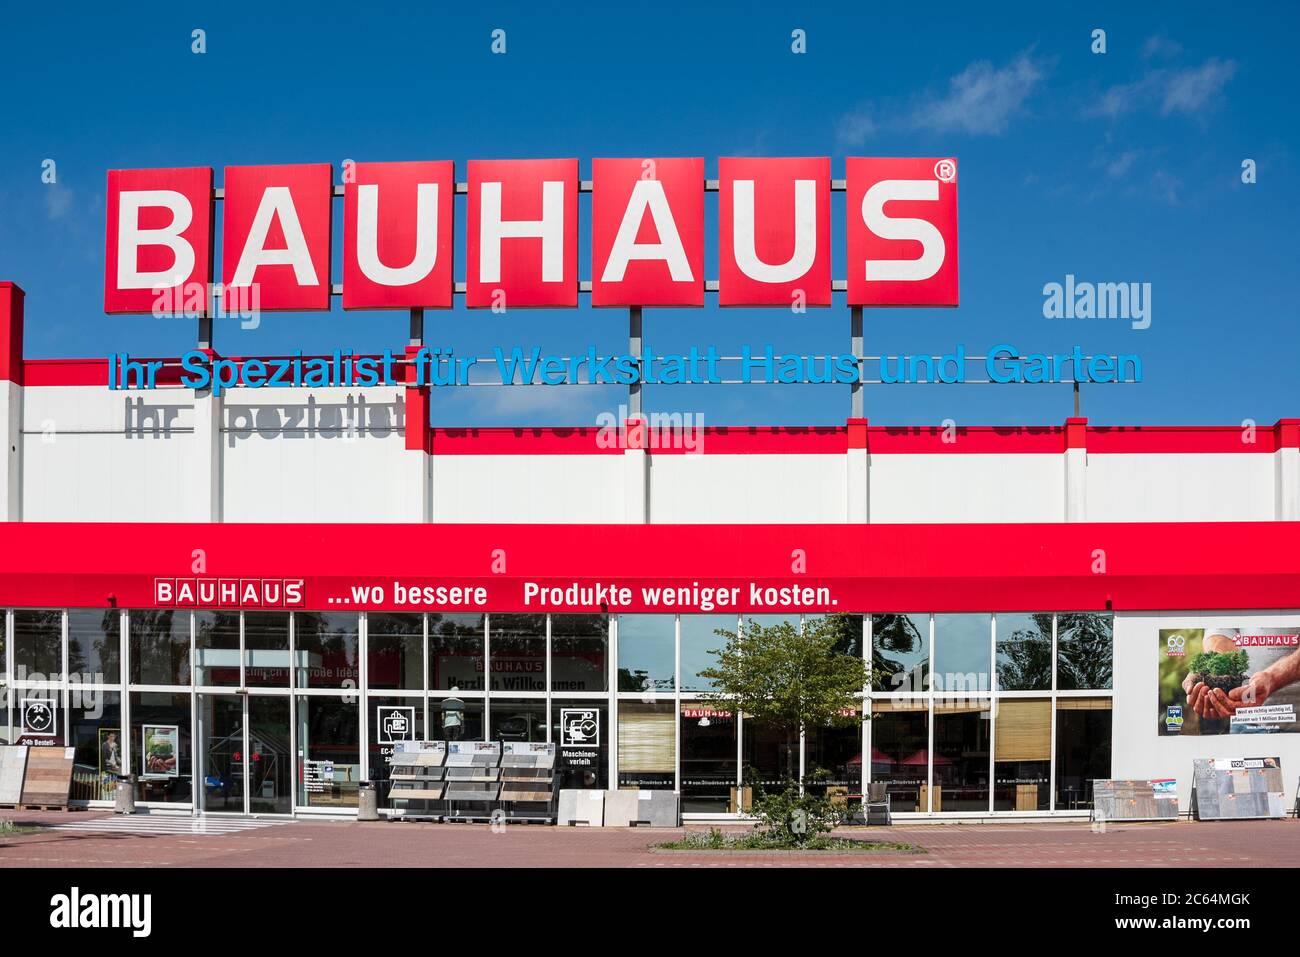 Bauhaus Werbebanner vor Blauem Himmel in der Sonne Stock Photo